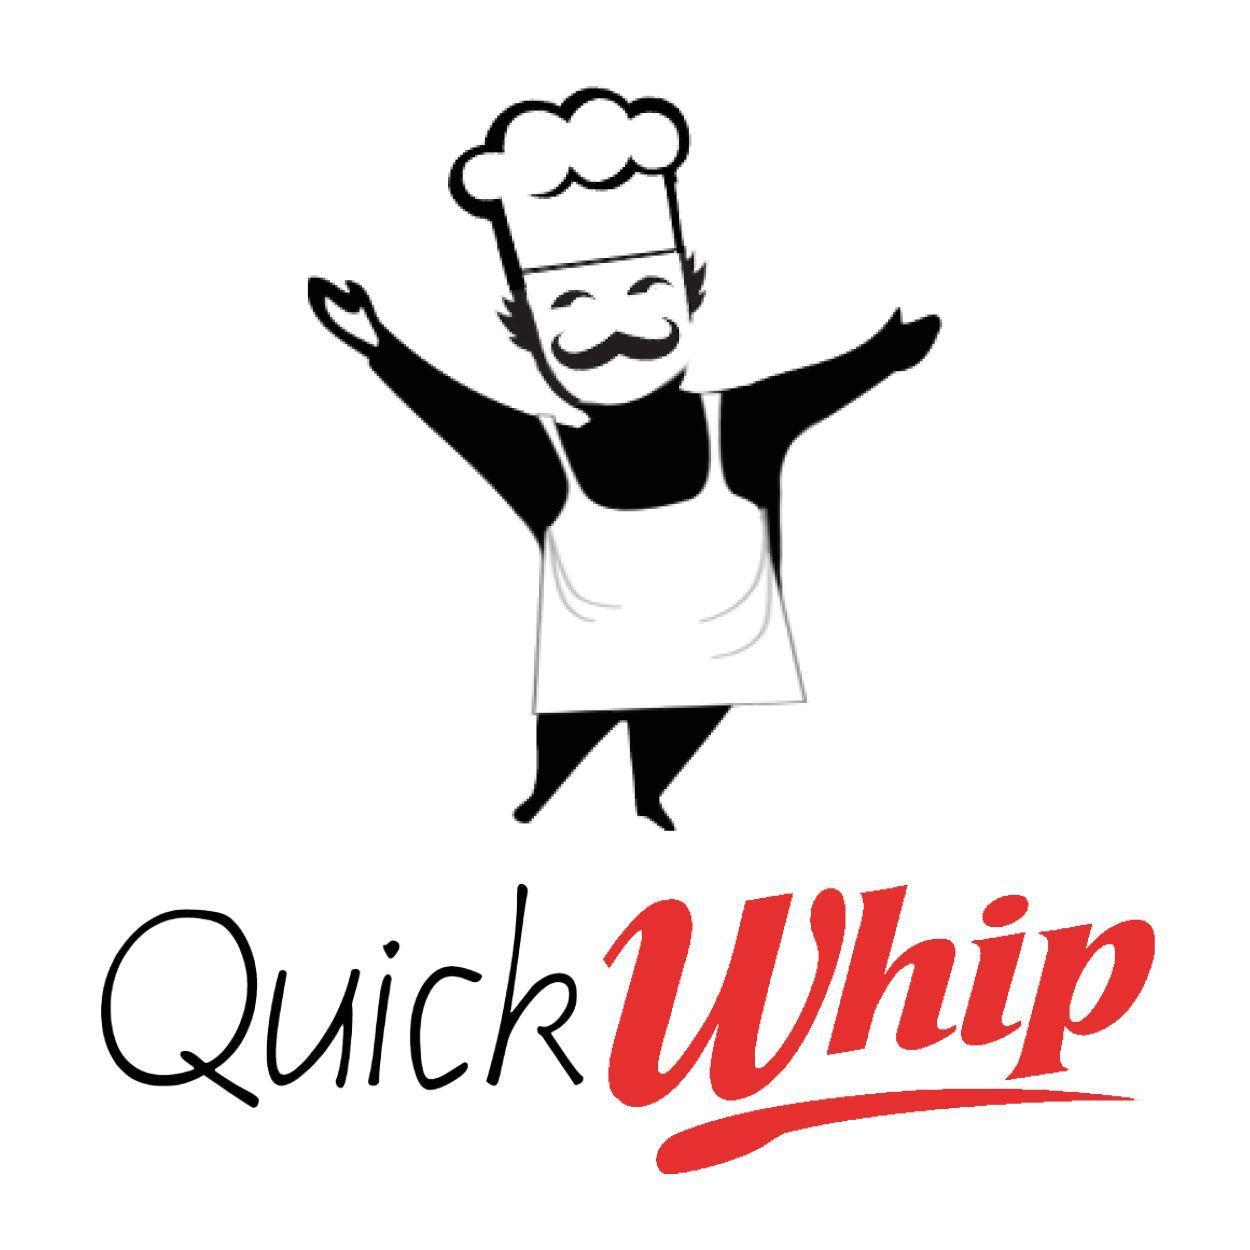 Quickwhip Logo